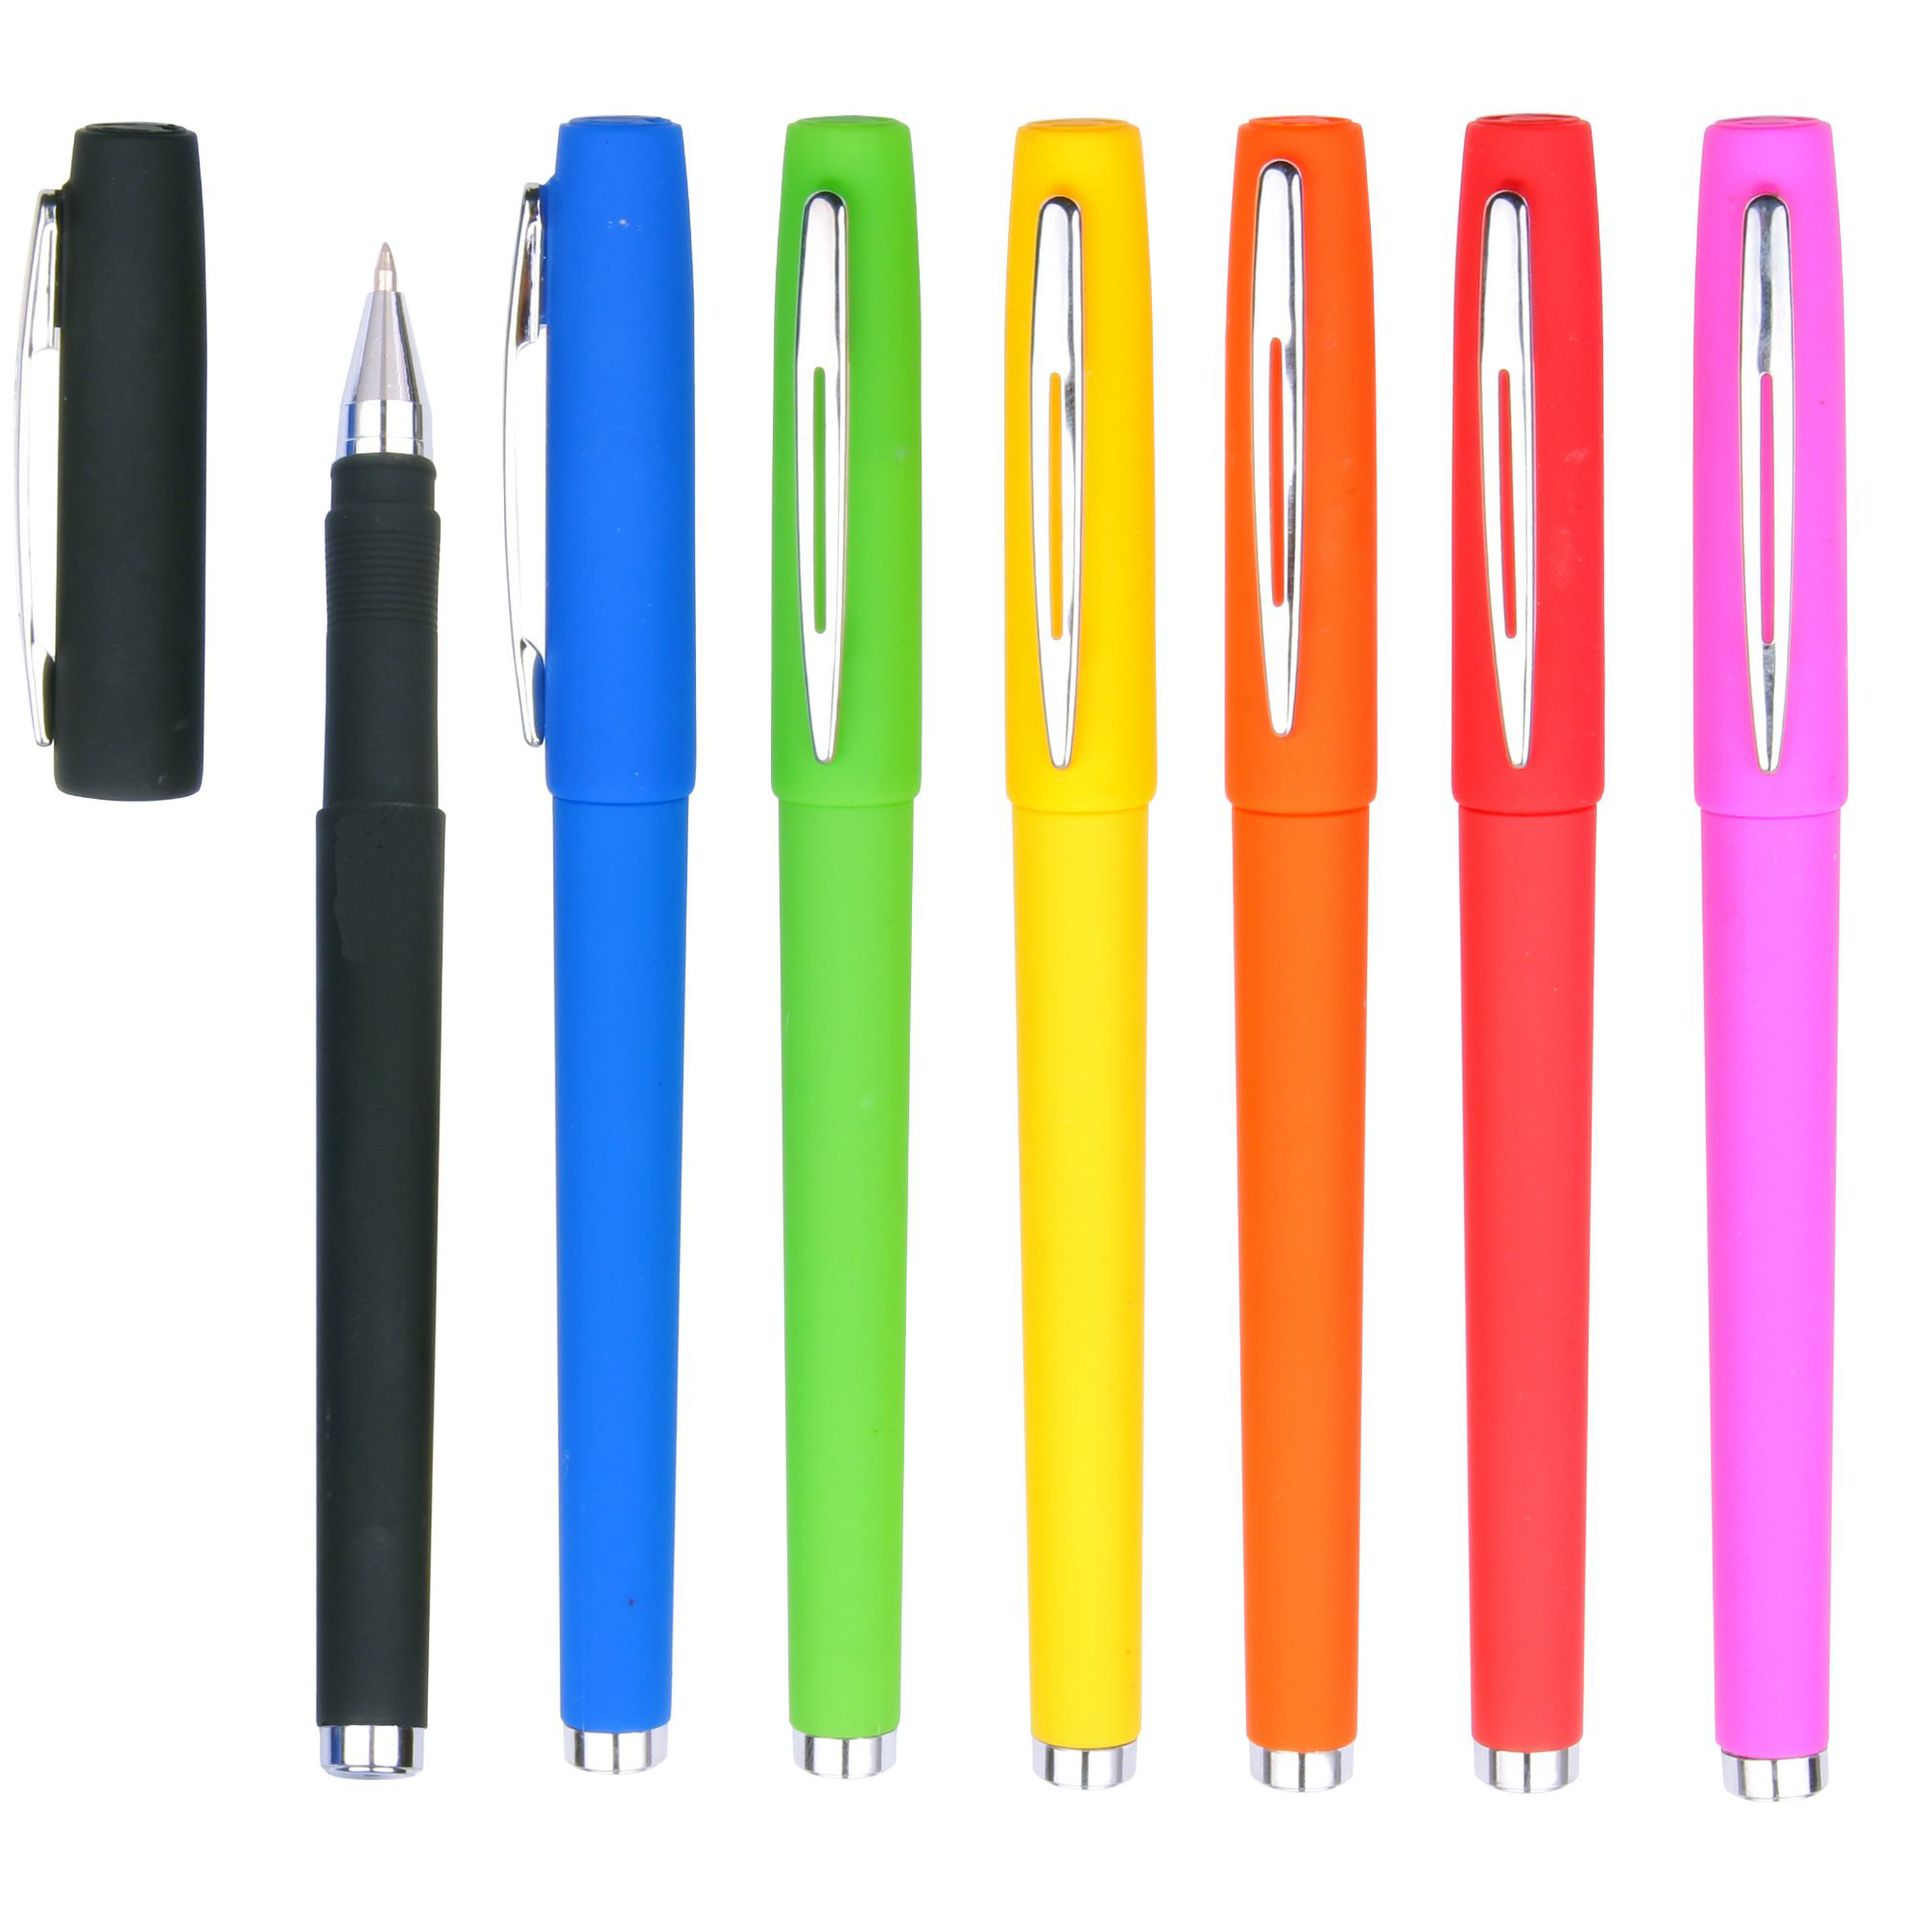 Plastic office gel pen